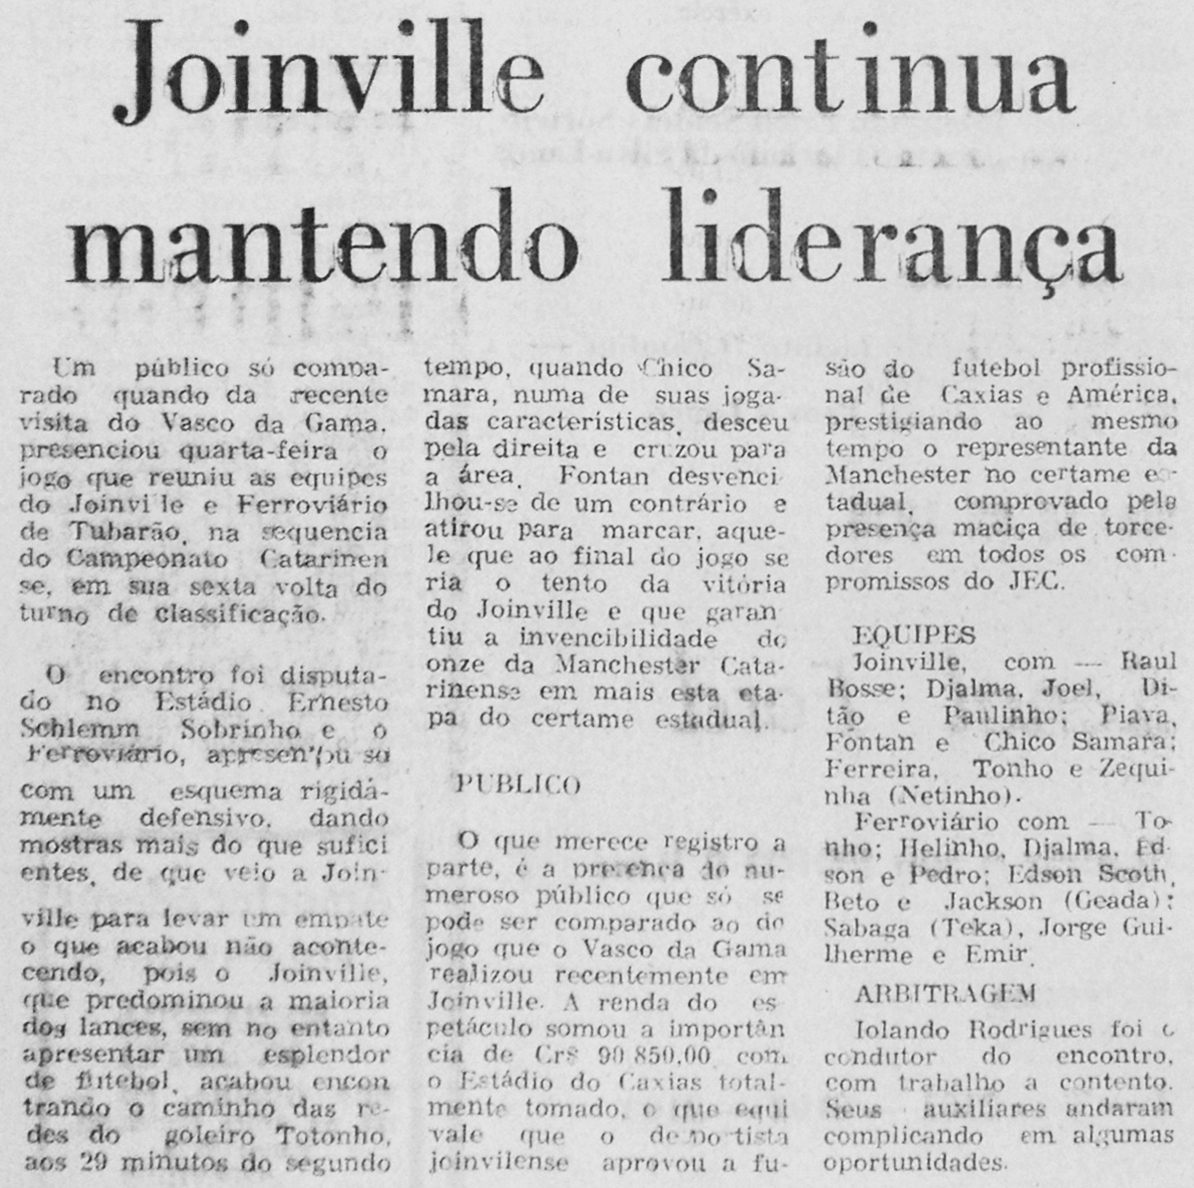 23-04-1976 Jornal de Jlle (0) (Joel, Paulinho Teta, Paulo Cesar, Ditão, Pompeu, Bosse, Ratinho, Samara, Tonho, Fontan e Linha) - Cópia